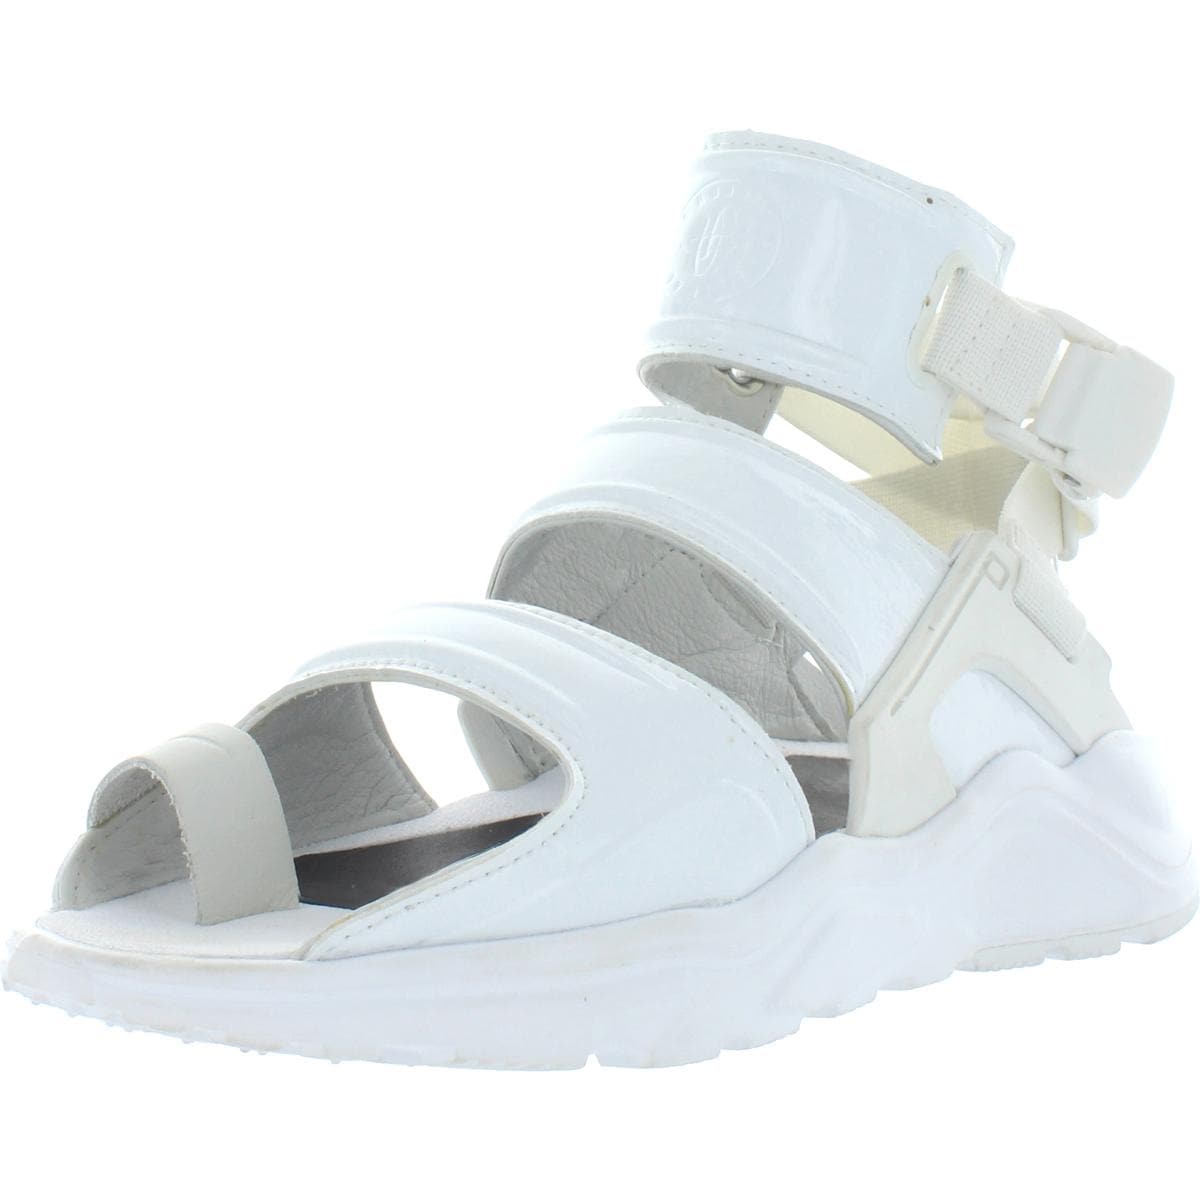 huarache gladiator sandals